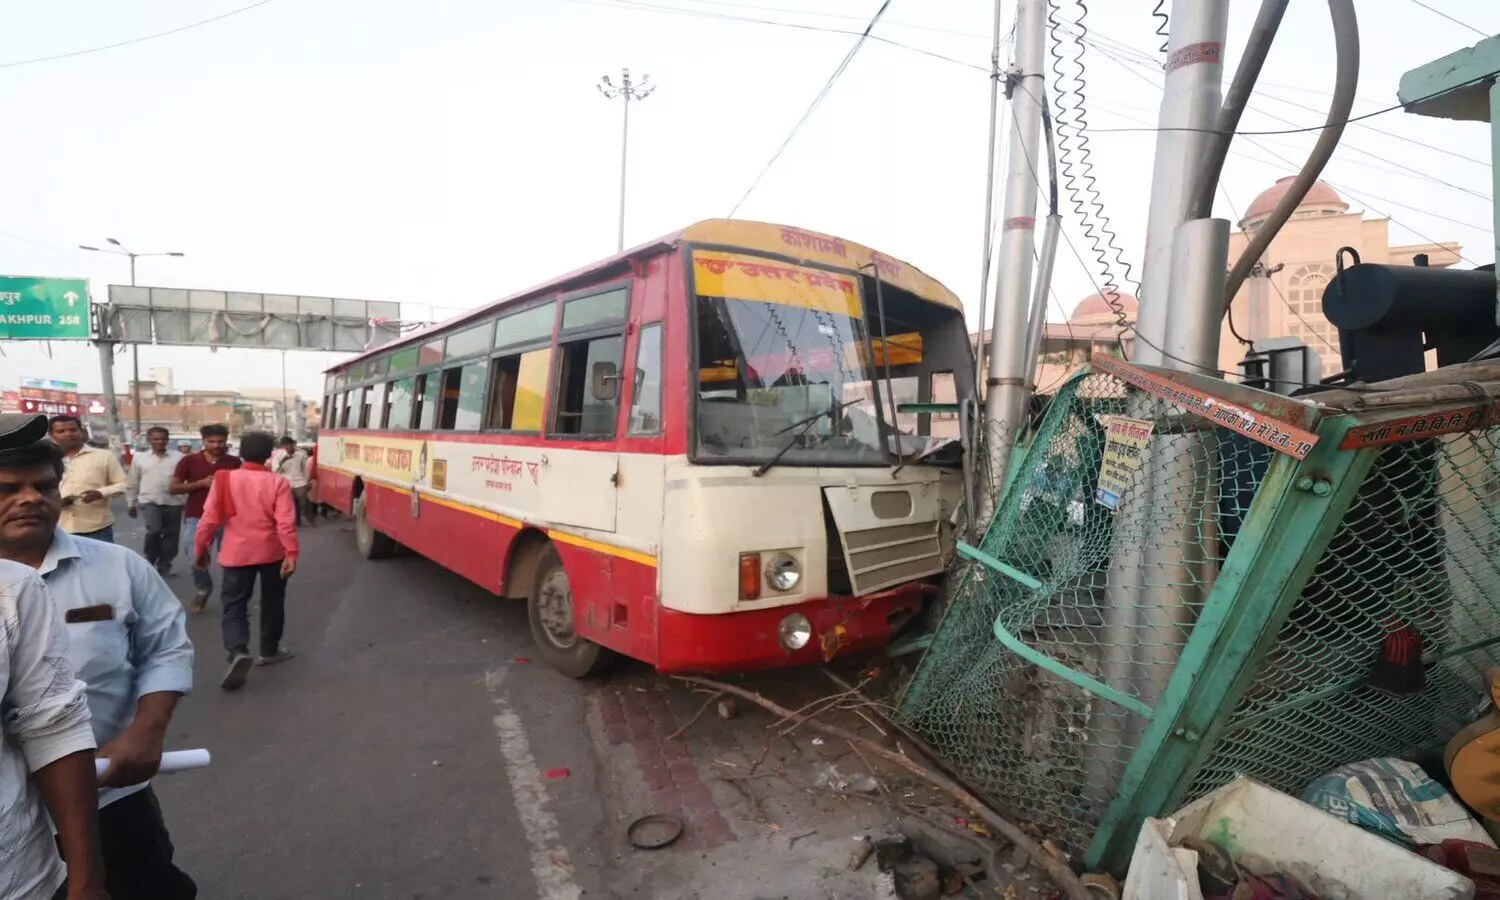 Lucknow Accident: ट्रांसफ़ार्मर में जा घुसी सवारियों से भरी बस, कई घायल, मौके पर मचा हड़कंप